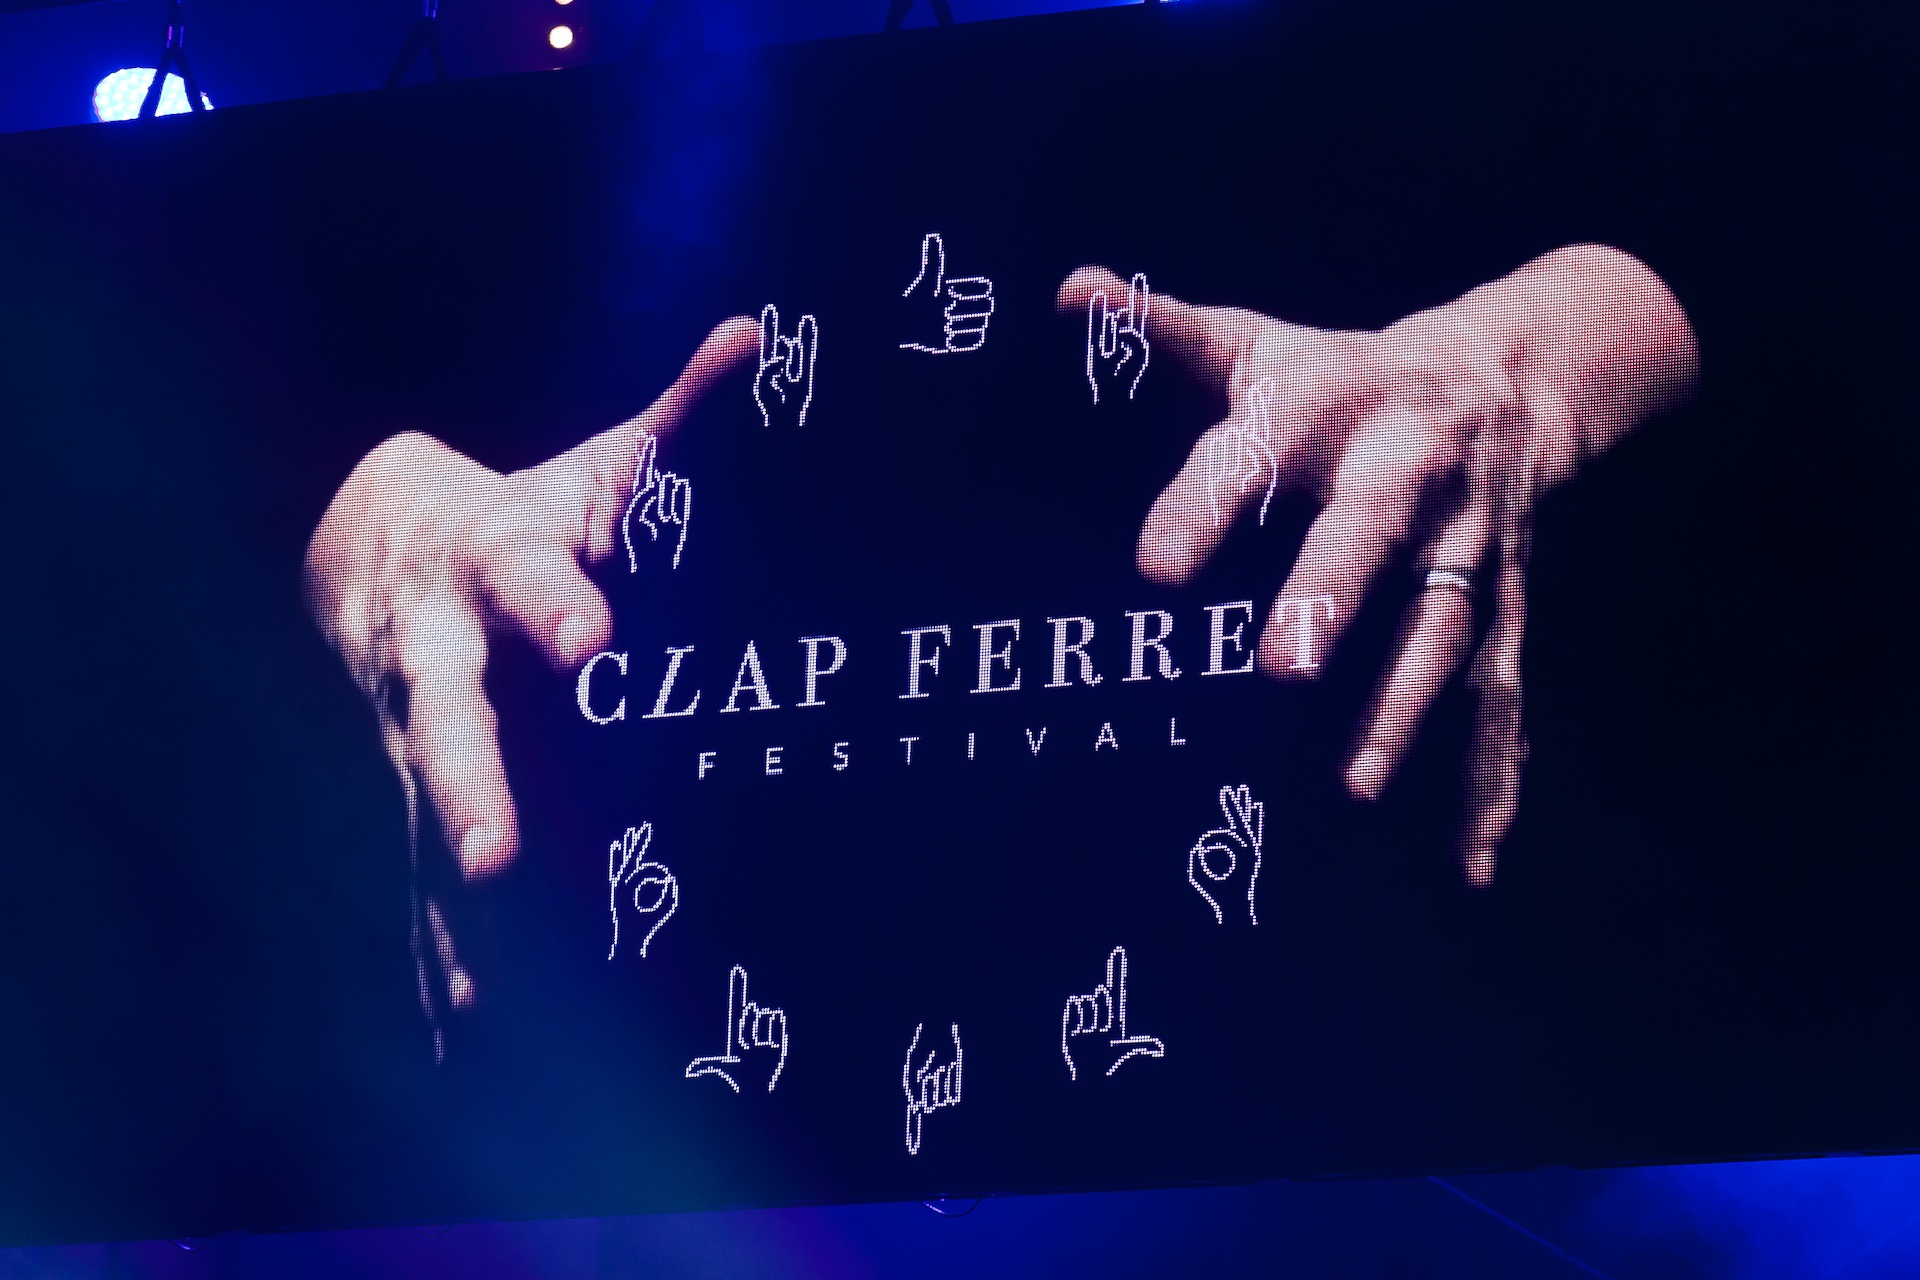 Le festival Clap Ferret, le 4 septembre 2015 - photo 5